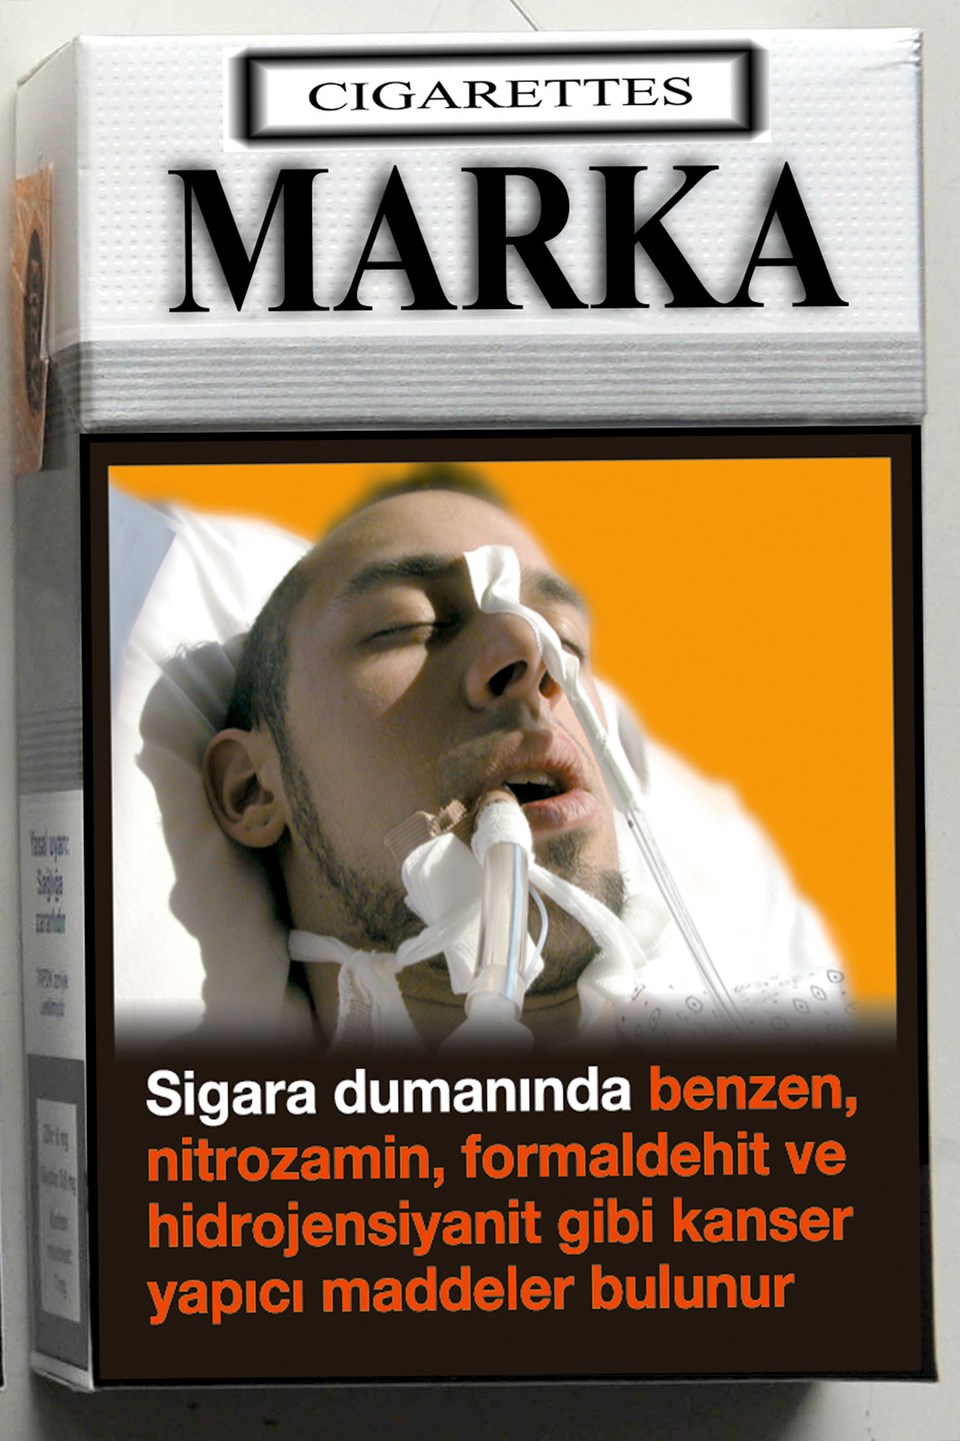 Sigara paketlerindeki uyarılar düzenlenecek - 3